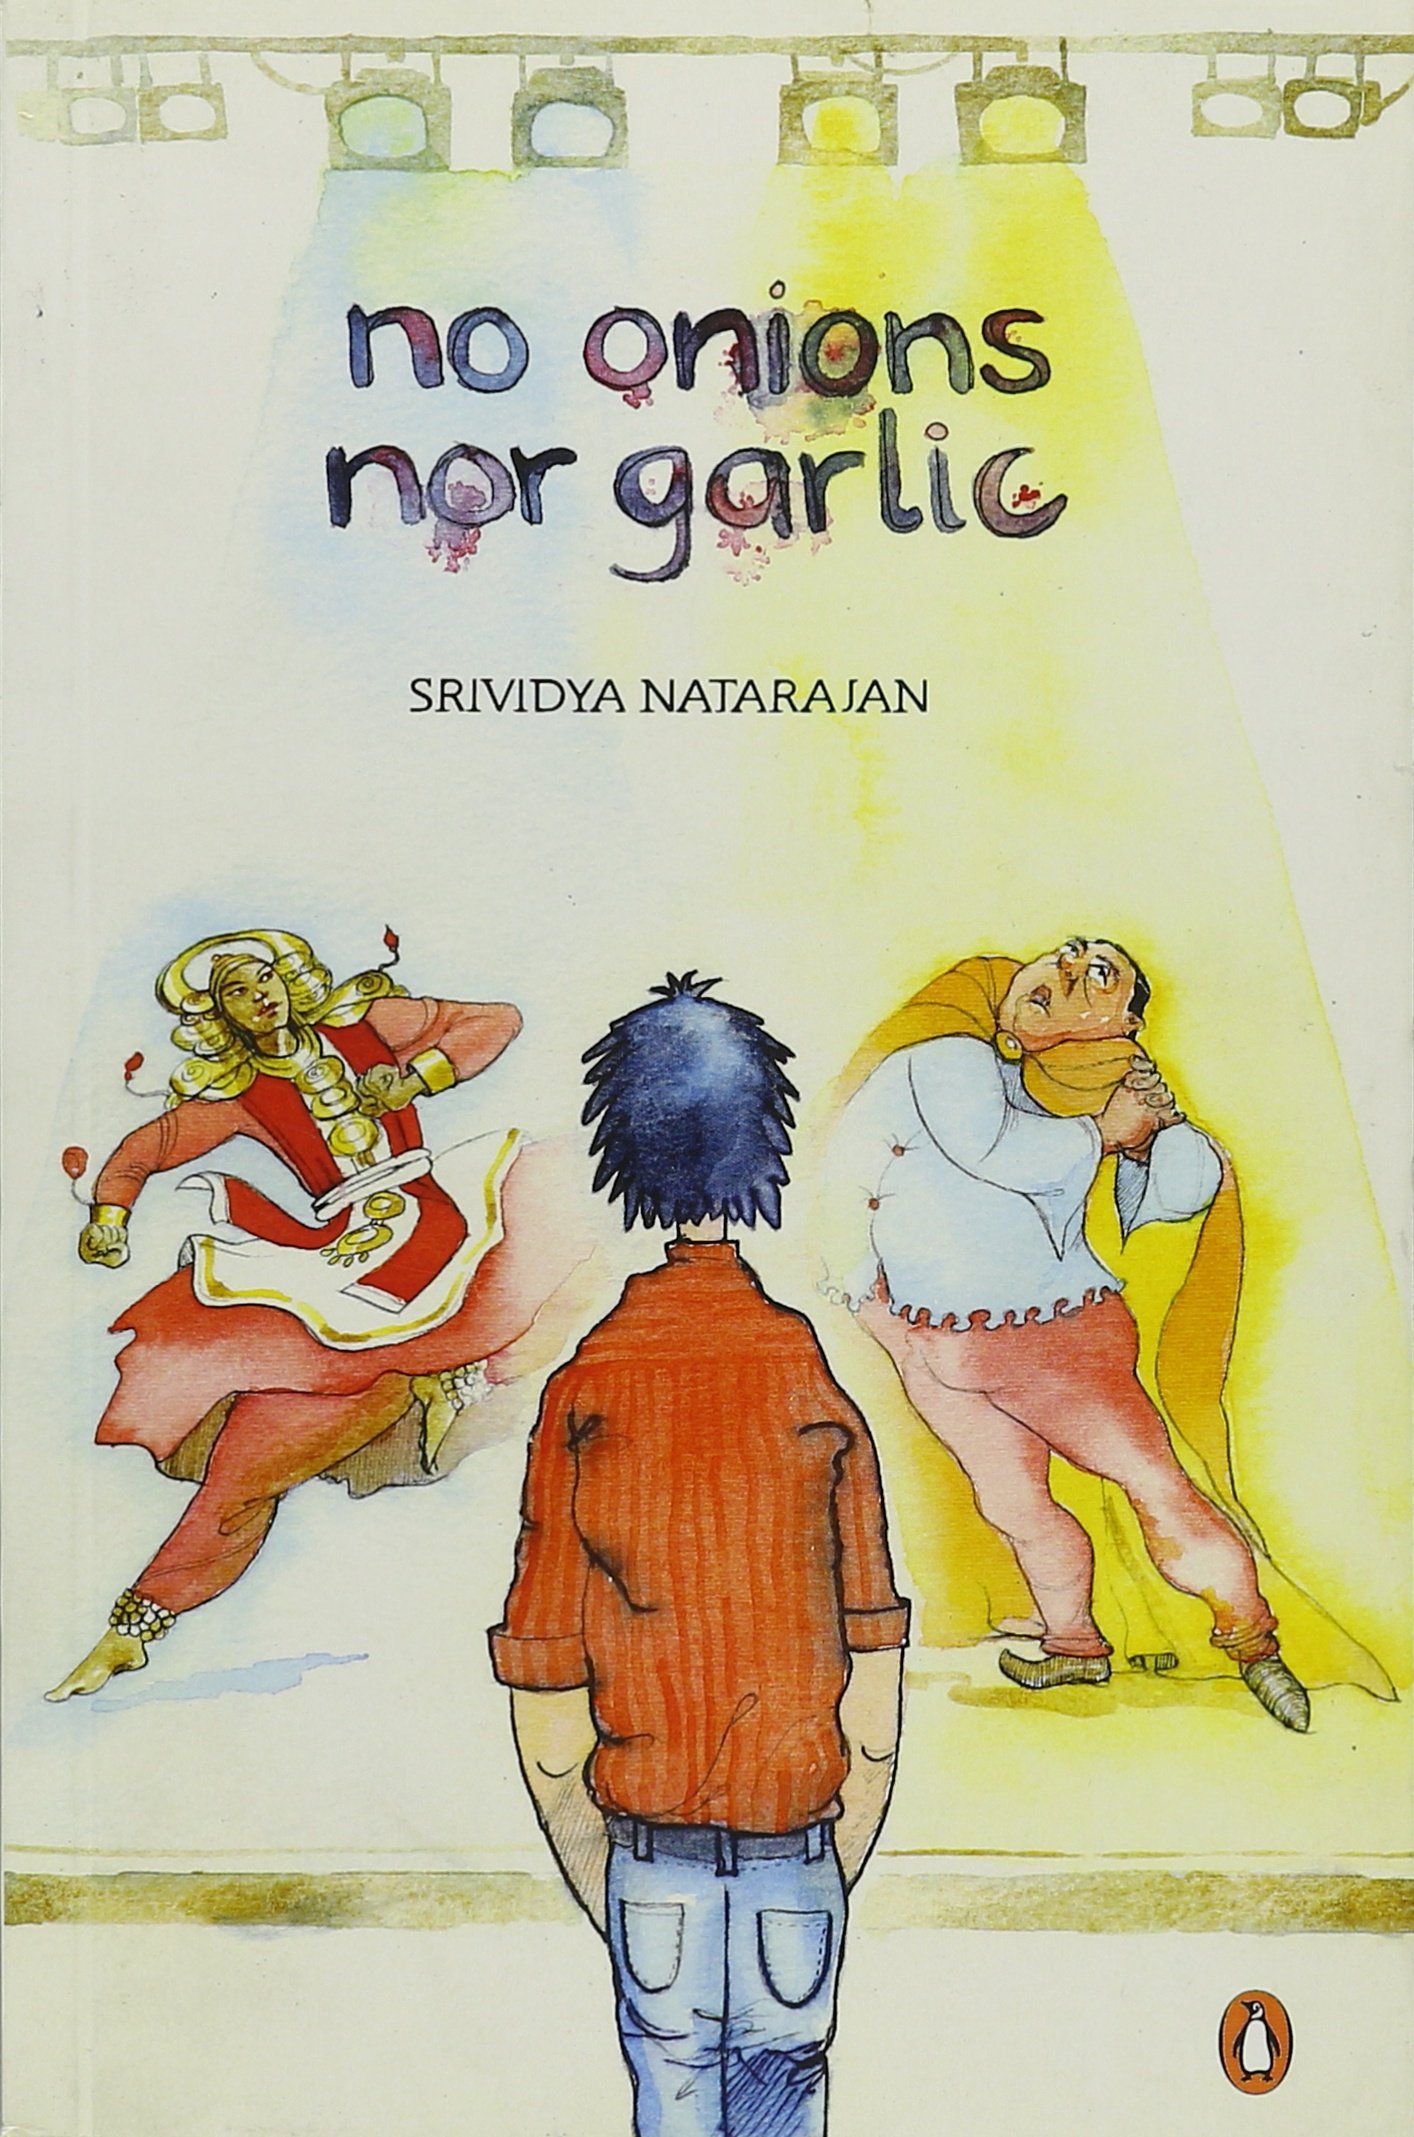 no onions nor garlic by srividya natarajan cover